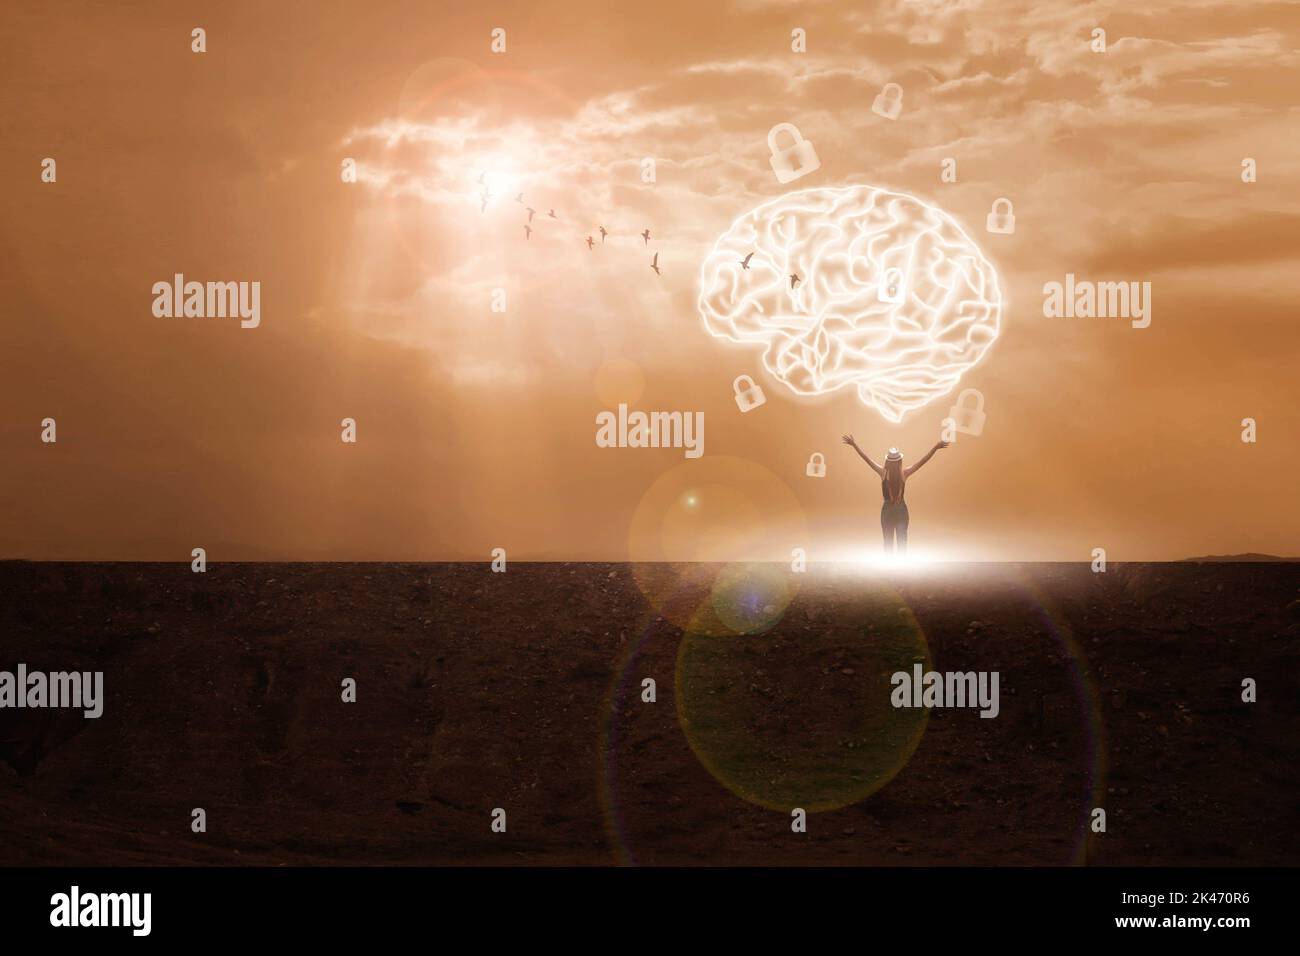 Virtuelle Frau mit symbolischen Neuronen in ihrem Gehirn. Freiheit des Denkens entsperren den Geist Kreativität und Innovation / Abendhimmel Hintergrund Stockfoto